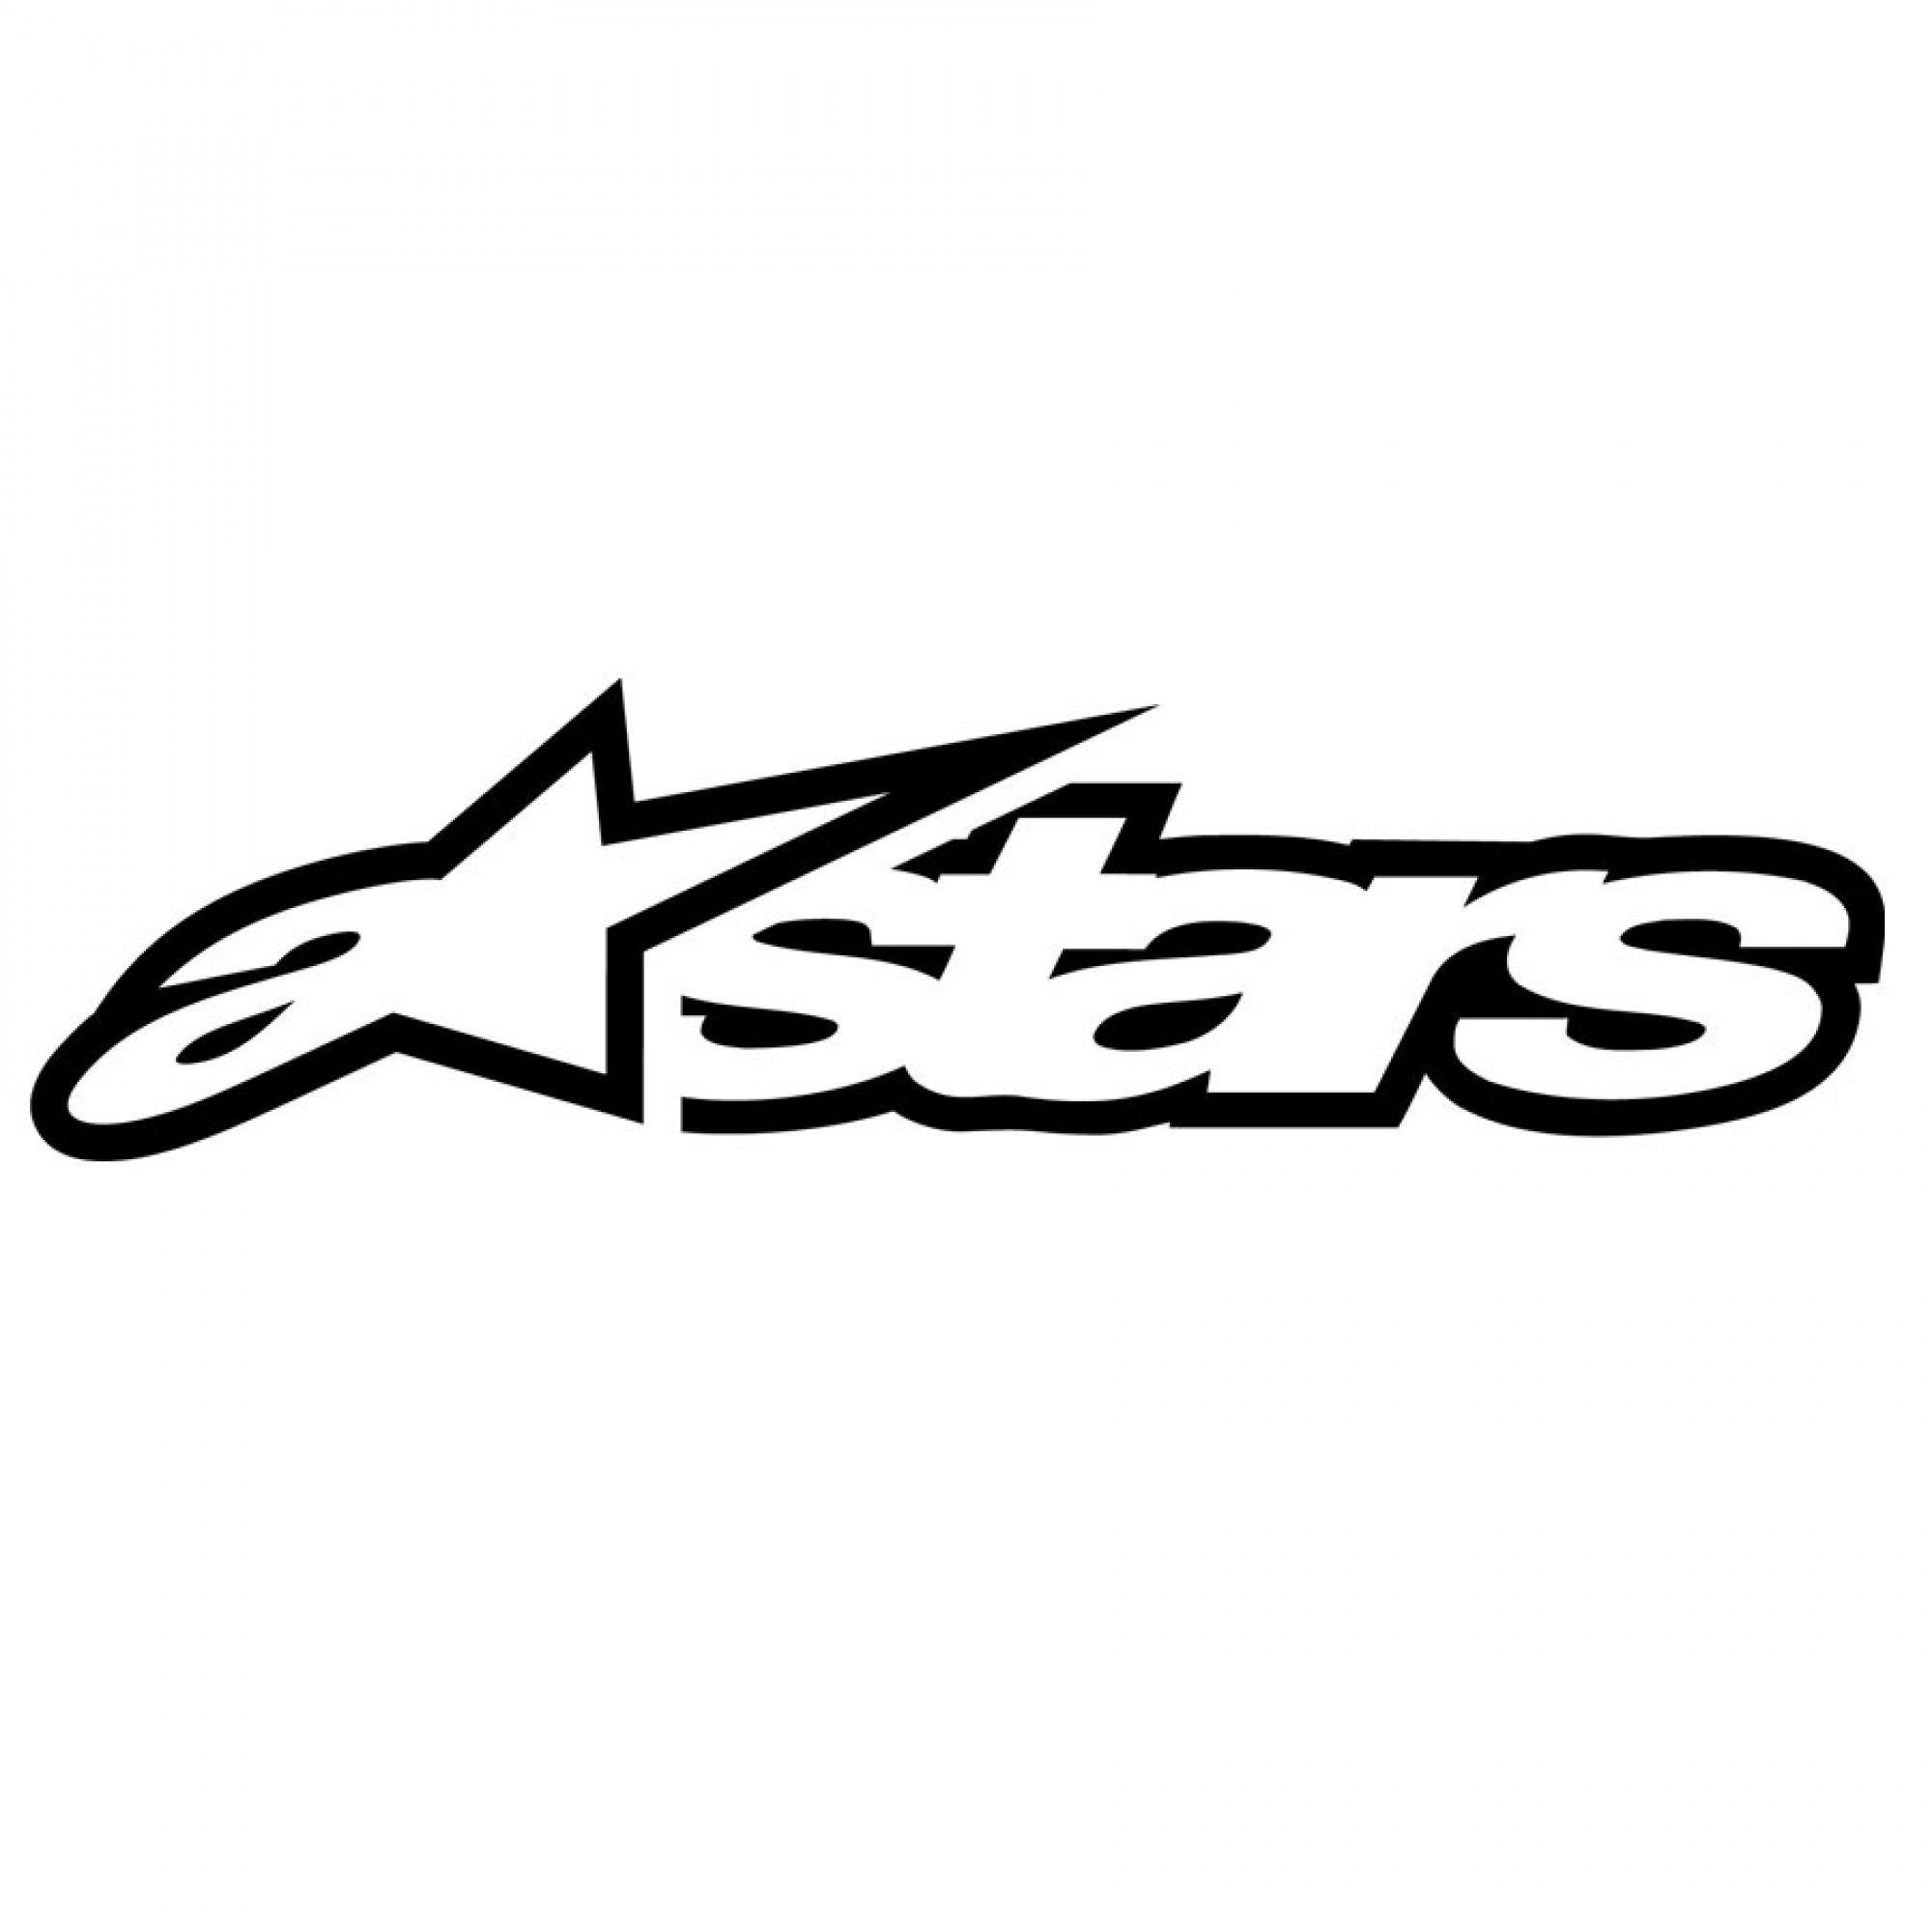 Alpinstar Logo - Astars Sticker 4